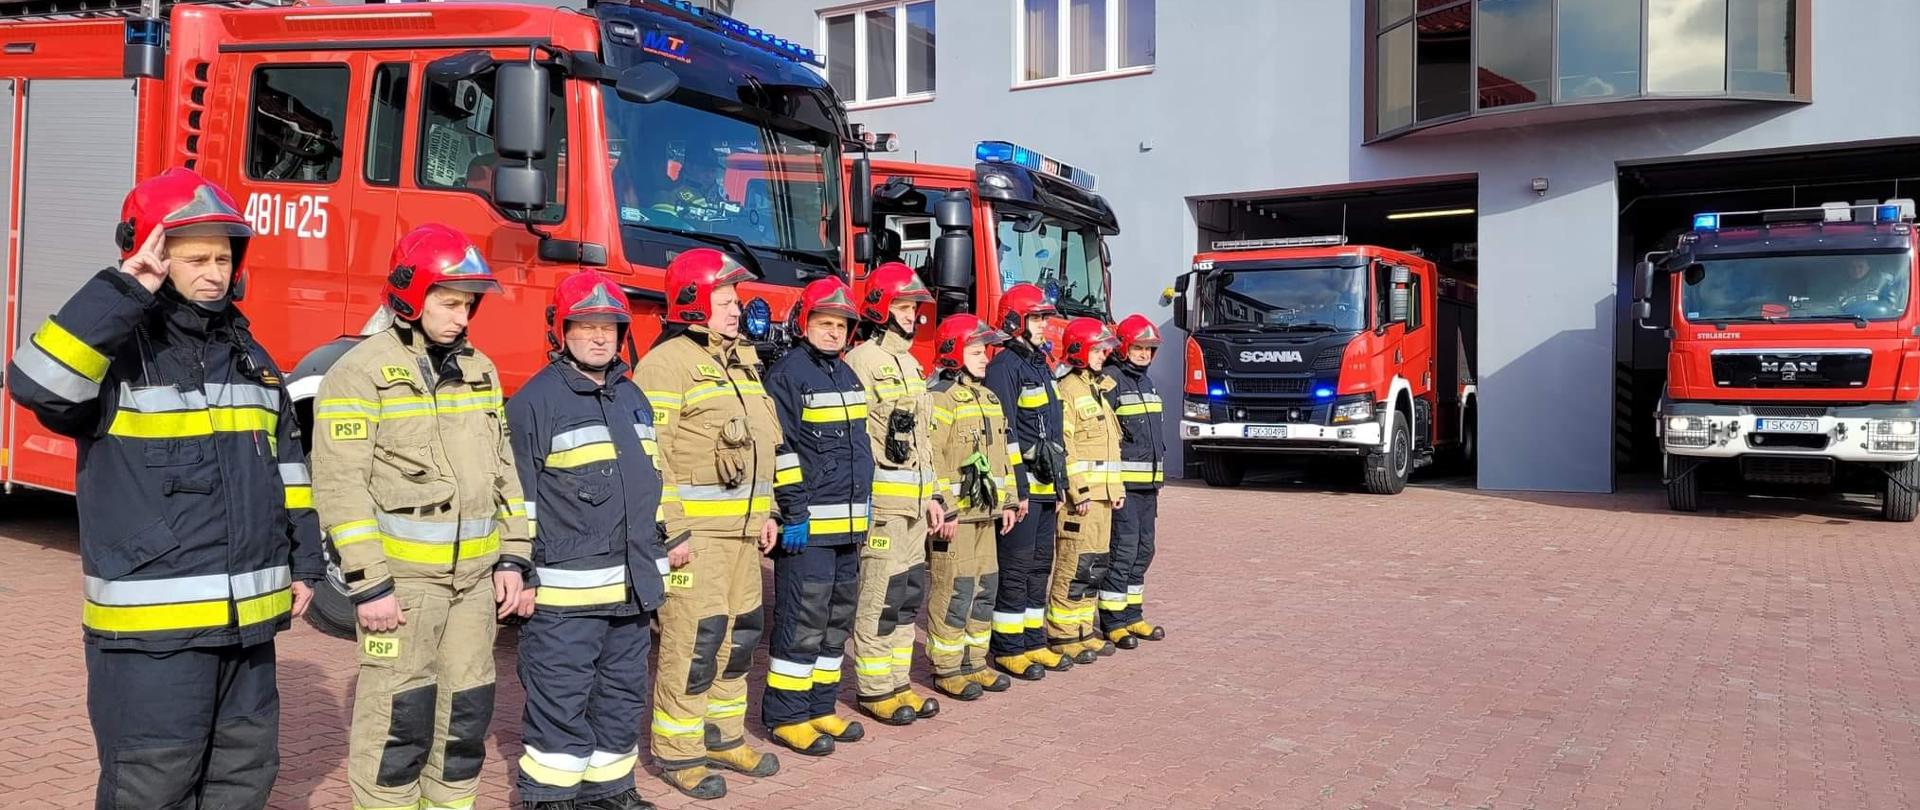 Zdjęcie obrazuje strażaków oddających hołd poległym ofiarom katastrofy smoleńskiej. Strażacy ubrani w ubrania bojowe stoją przed garażami strażnicy . Za nimi stoją wystawione samochody pożarnicze z włączonymi sygnałami świetlnymi.